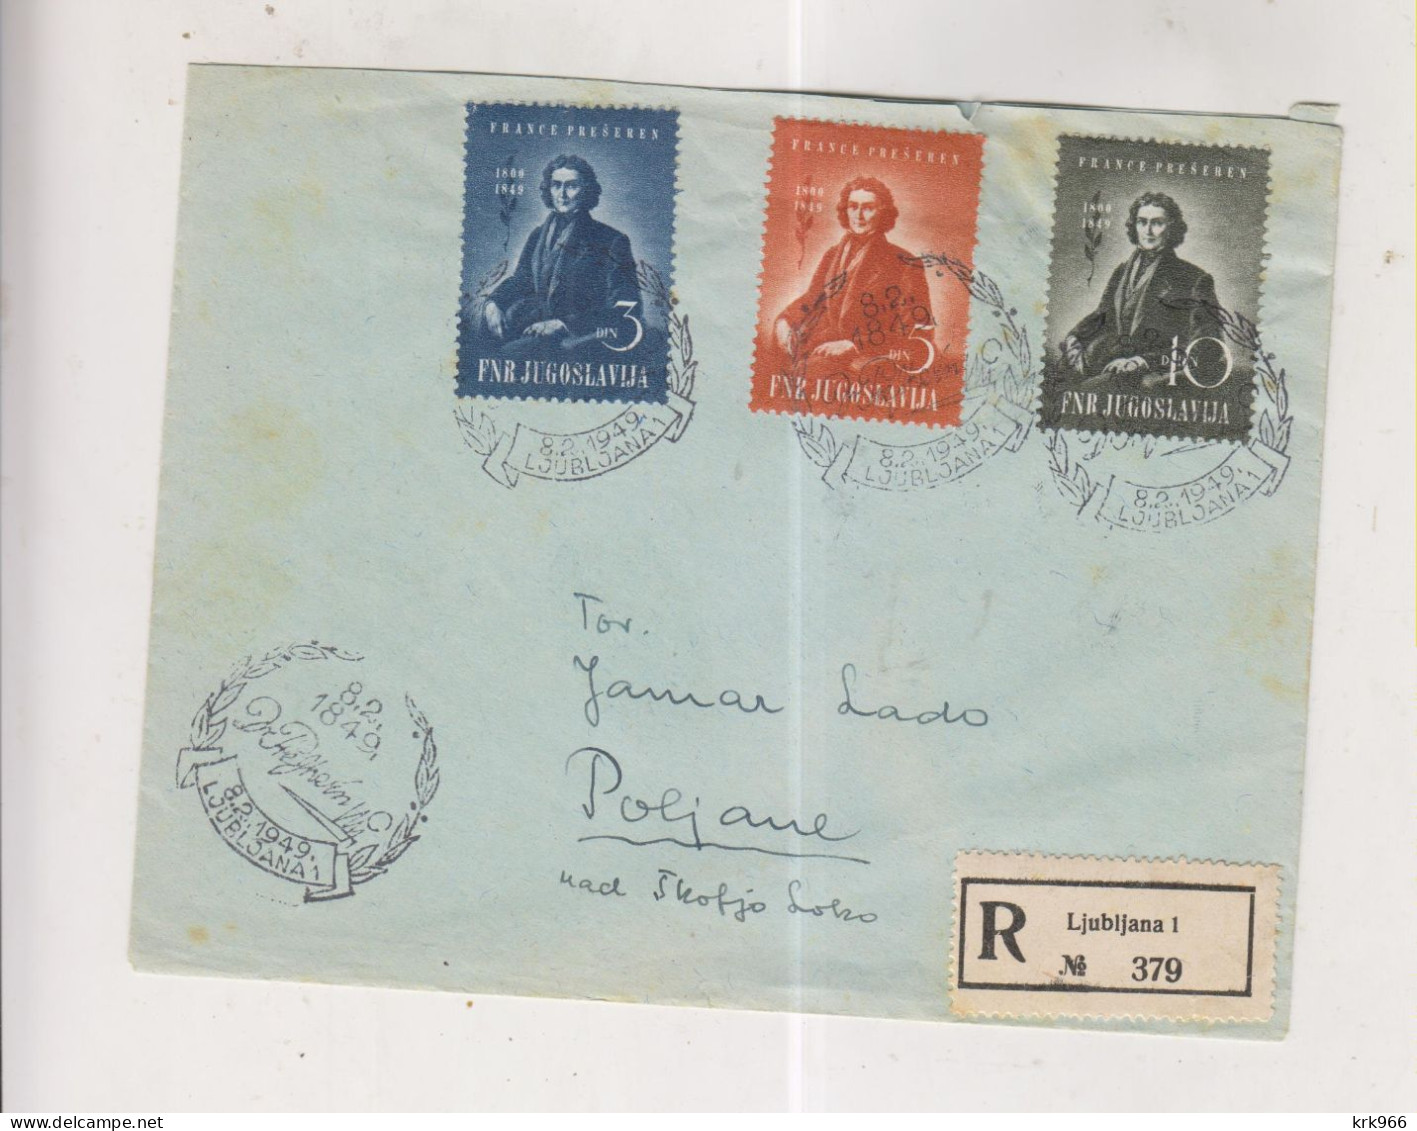 YUGOSLAVIA,1949 LJUBLJANA PRESERN FDC Registered Cover - Covers & Documents